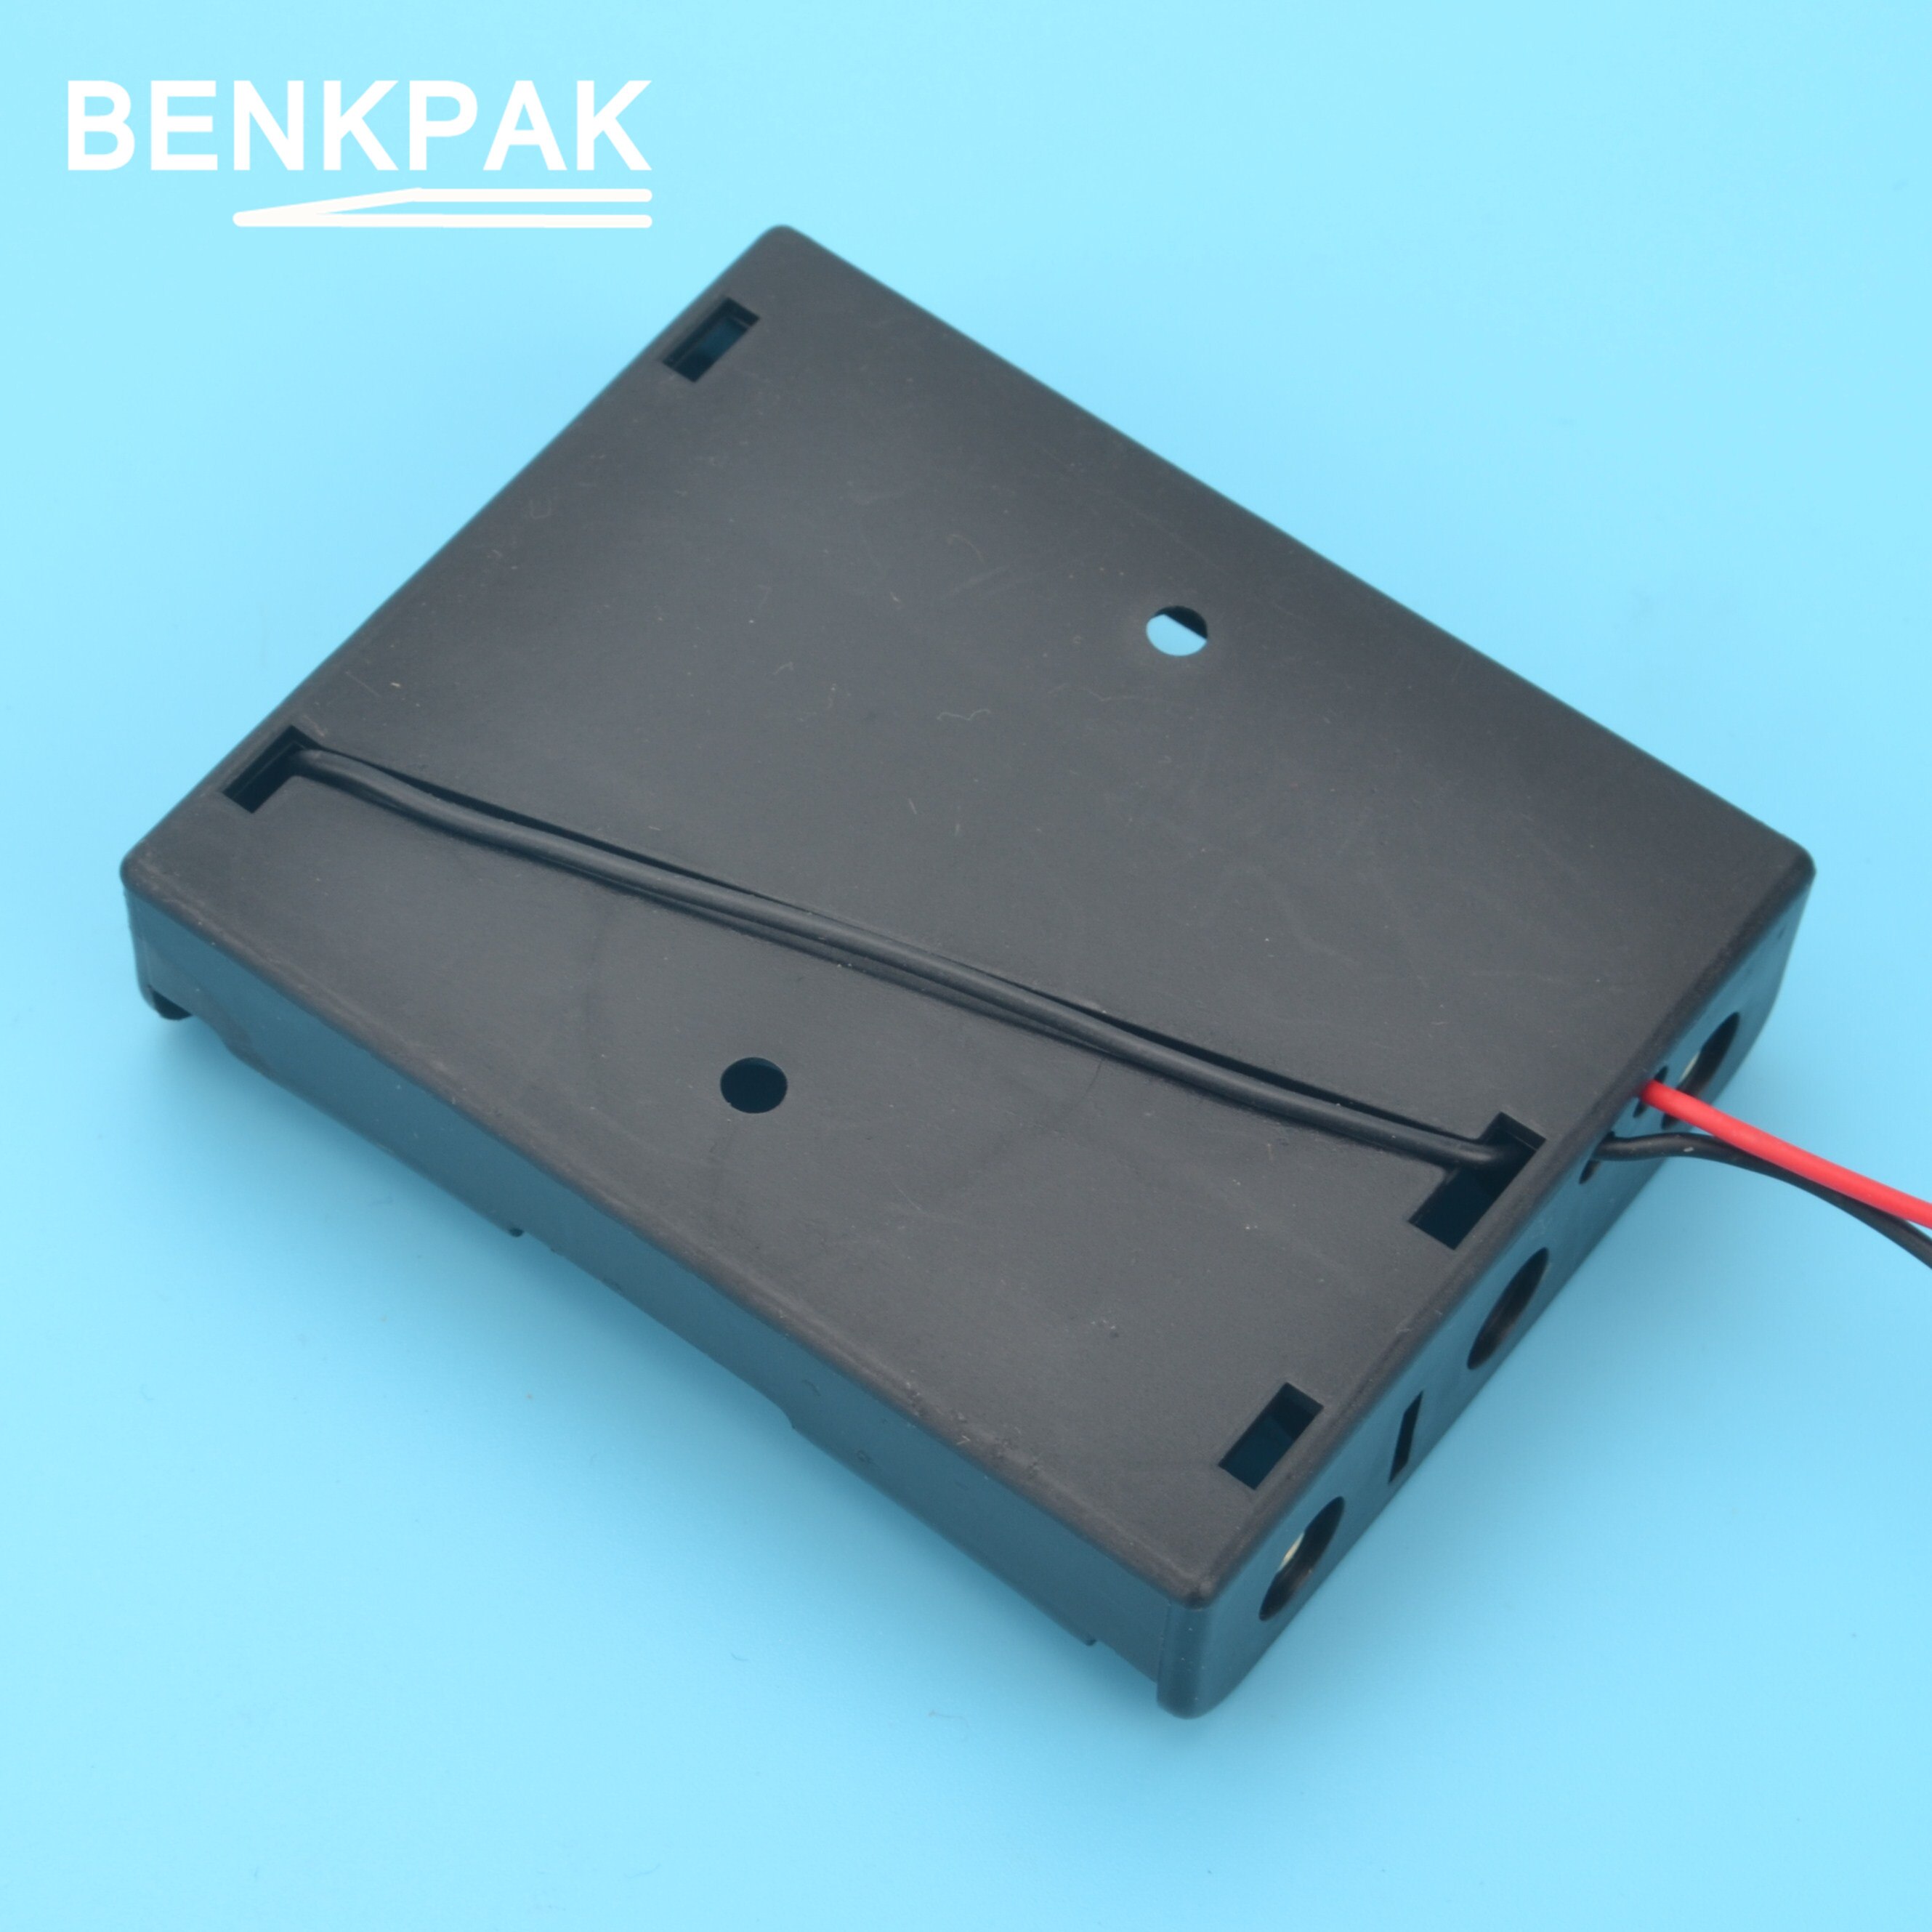 2 stk. benkpak 18650 plastik batteriholder opbevaringsæske til 3 x 18650 sort batterikasse batteristik til energimåler